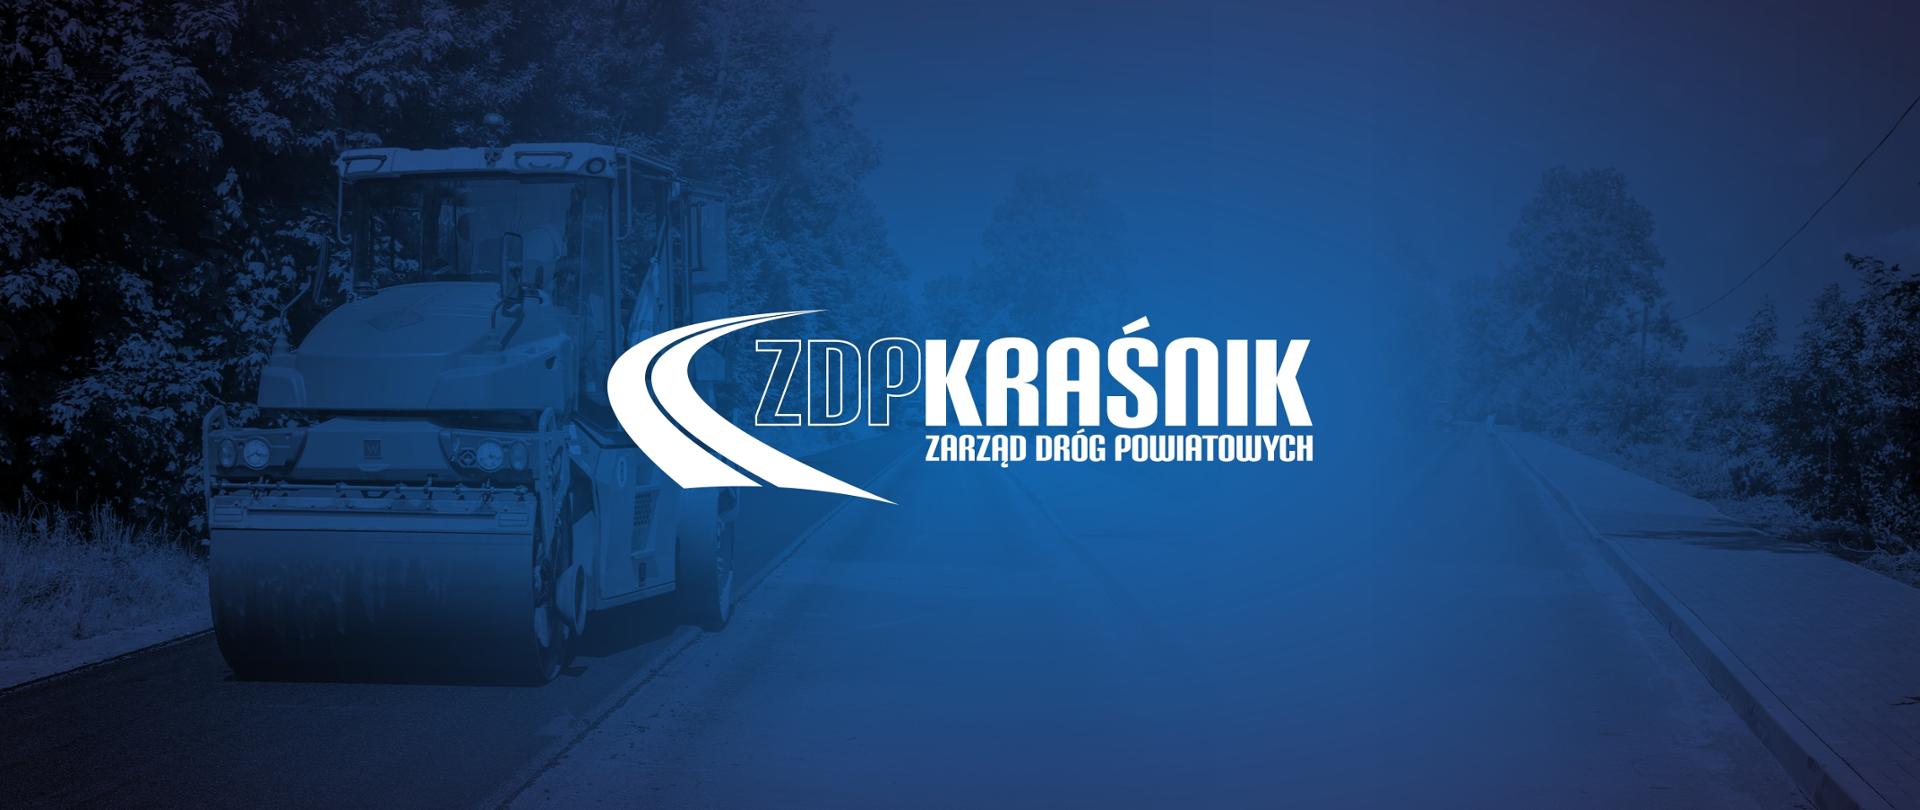 Grafika przedstawia białe logo Zarządu Dróg Powiatowych w Kraśniku. Logo składa się z wizerunku zakrętu na drodze asfaltowej, obok którego znajduje się napis "ZDP Kraśnik" oraz poniżej "Zarząd Dróg Powiatowych". Logo znajduje się na niebieskim tle.